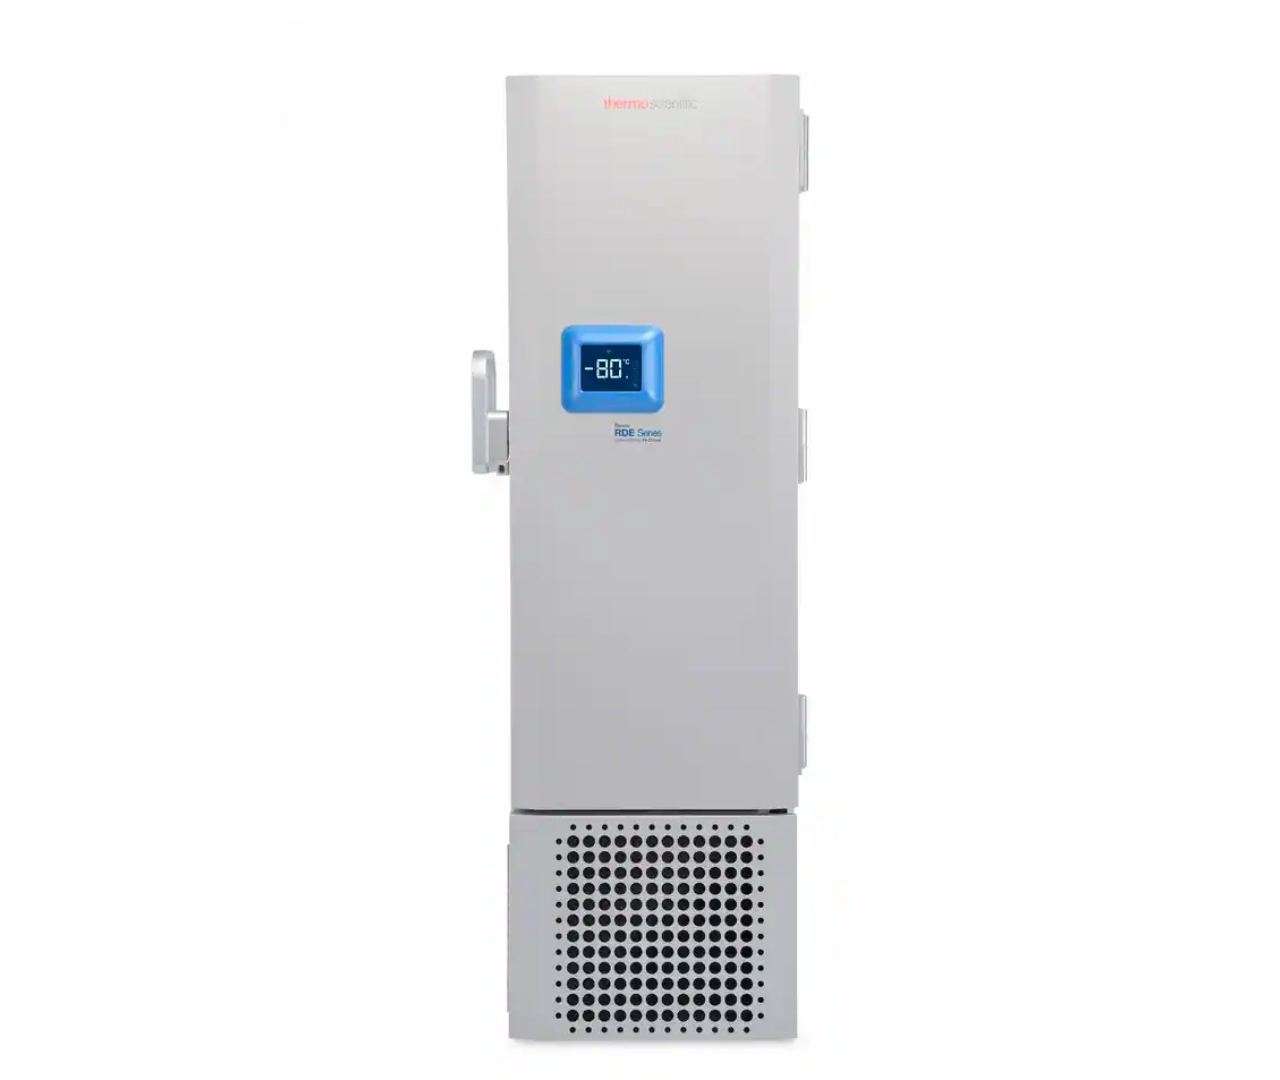 Revco RDE50086FD -80 Freezer